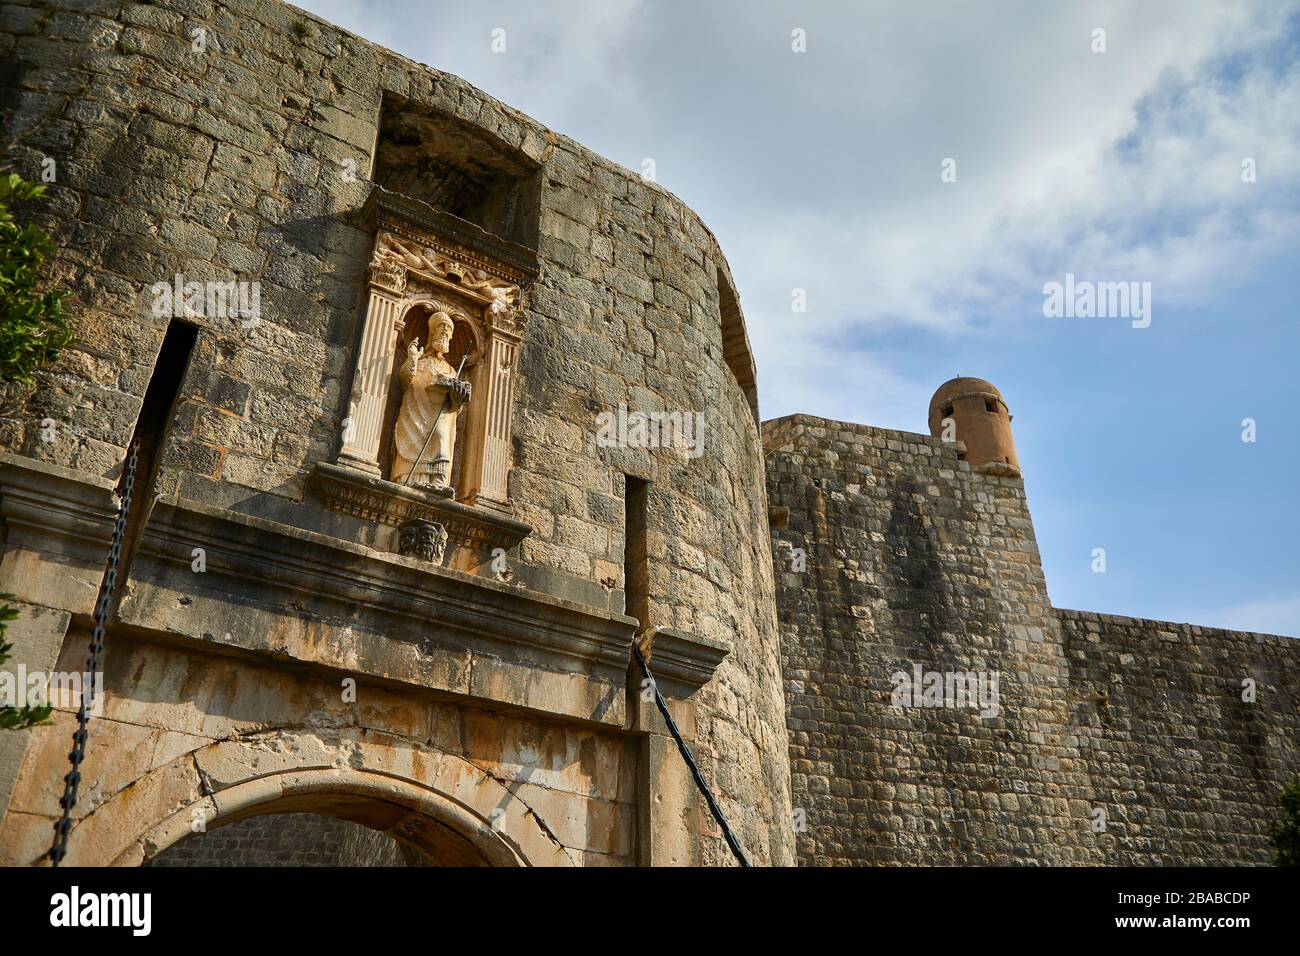 Die Statue des heiligen Blaise an der Wand des Pfahltores, der Eingang zum Gebiet der Altstadt von Dubrovnik, Kroatien, ist Stockfoto